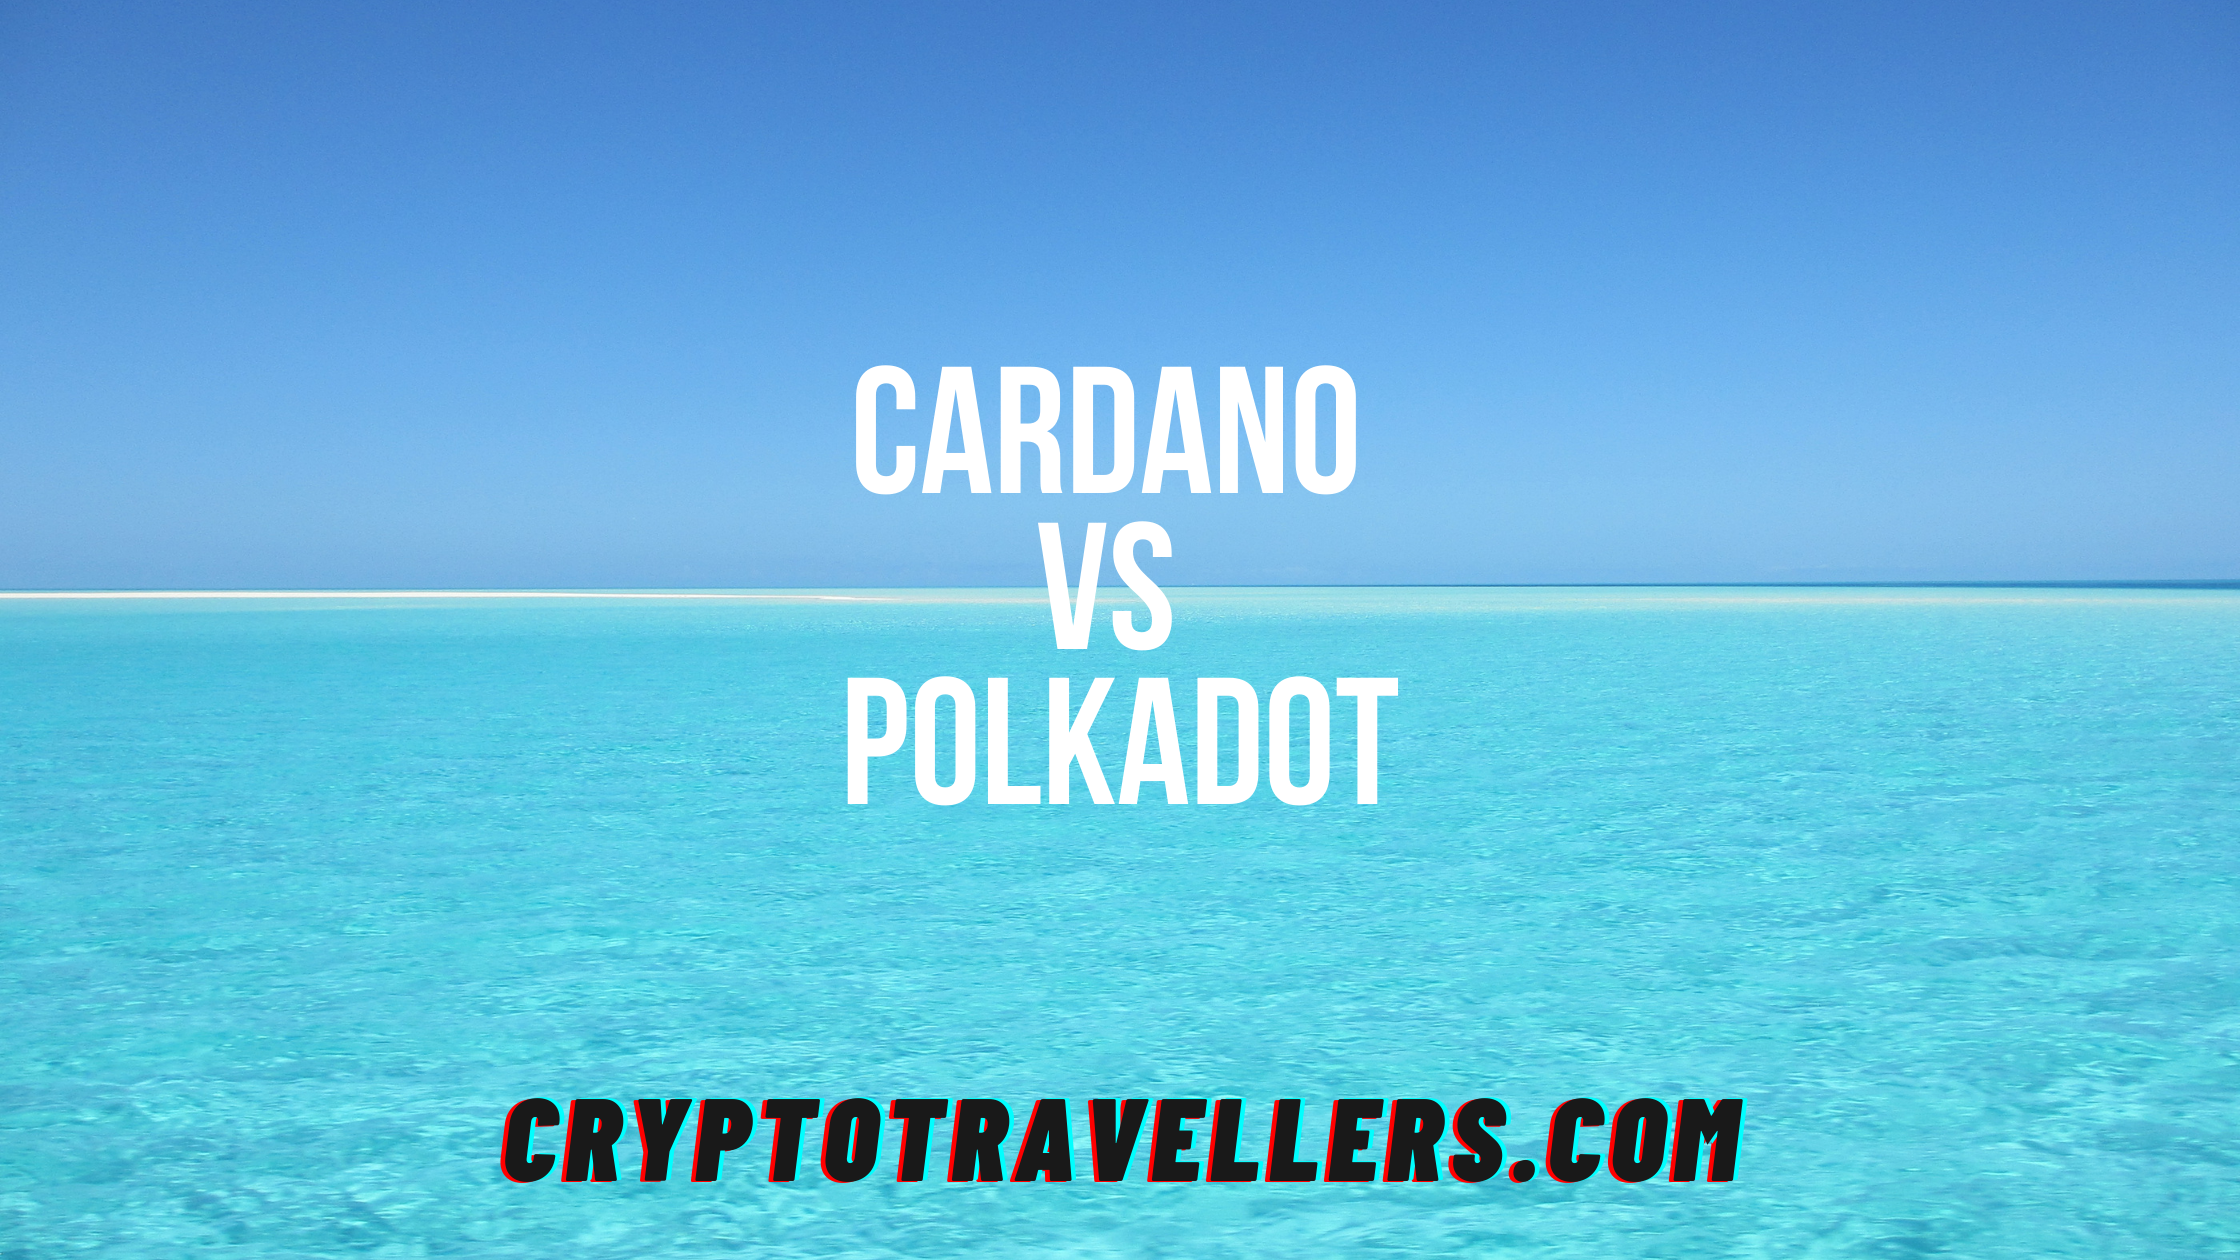 Cardano Vs Polkadot: Who Will Win?